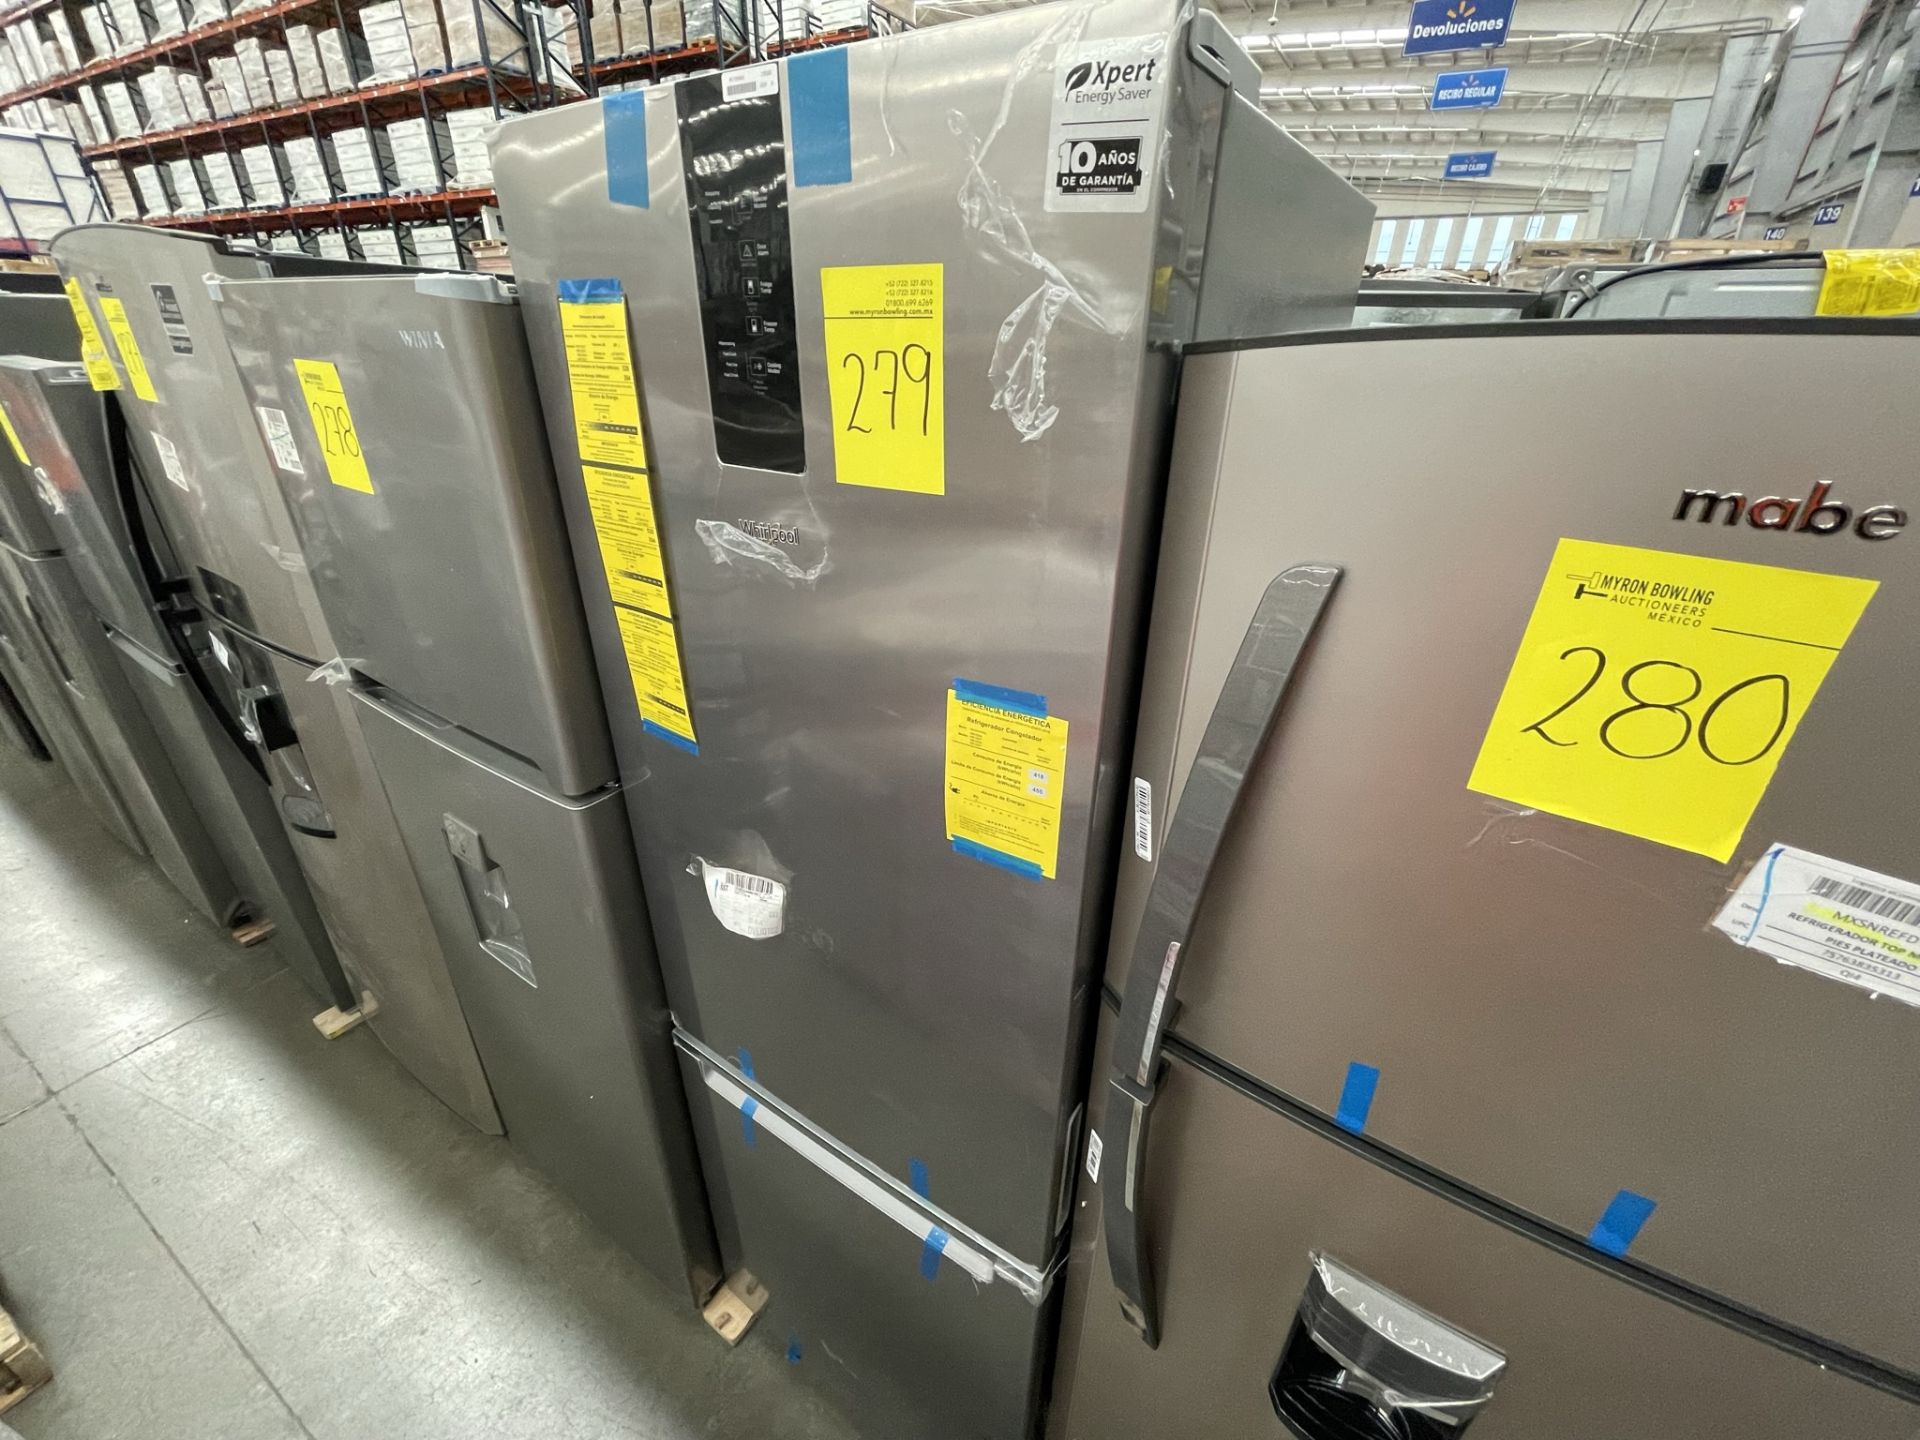 (EQUIPO NUEVO) 1 Refrigerador Marca WHIRPOOL, Modelo WB1332A, Serie WB1332A03, Color GRIS, LB-61189 - Image 3 of 8